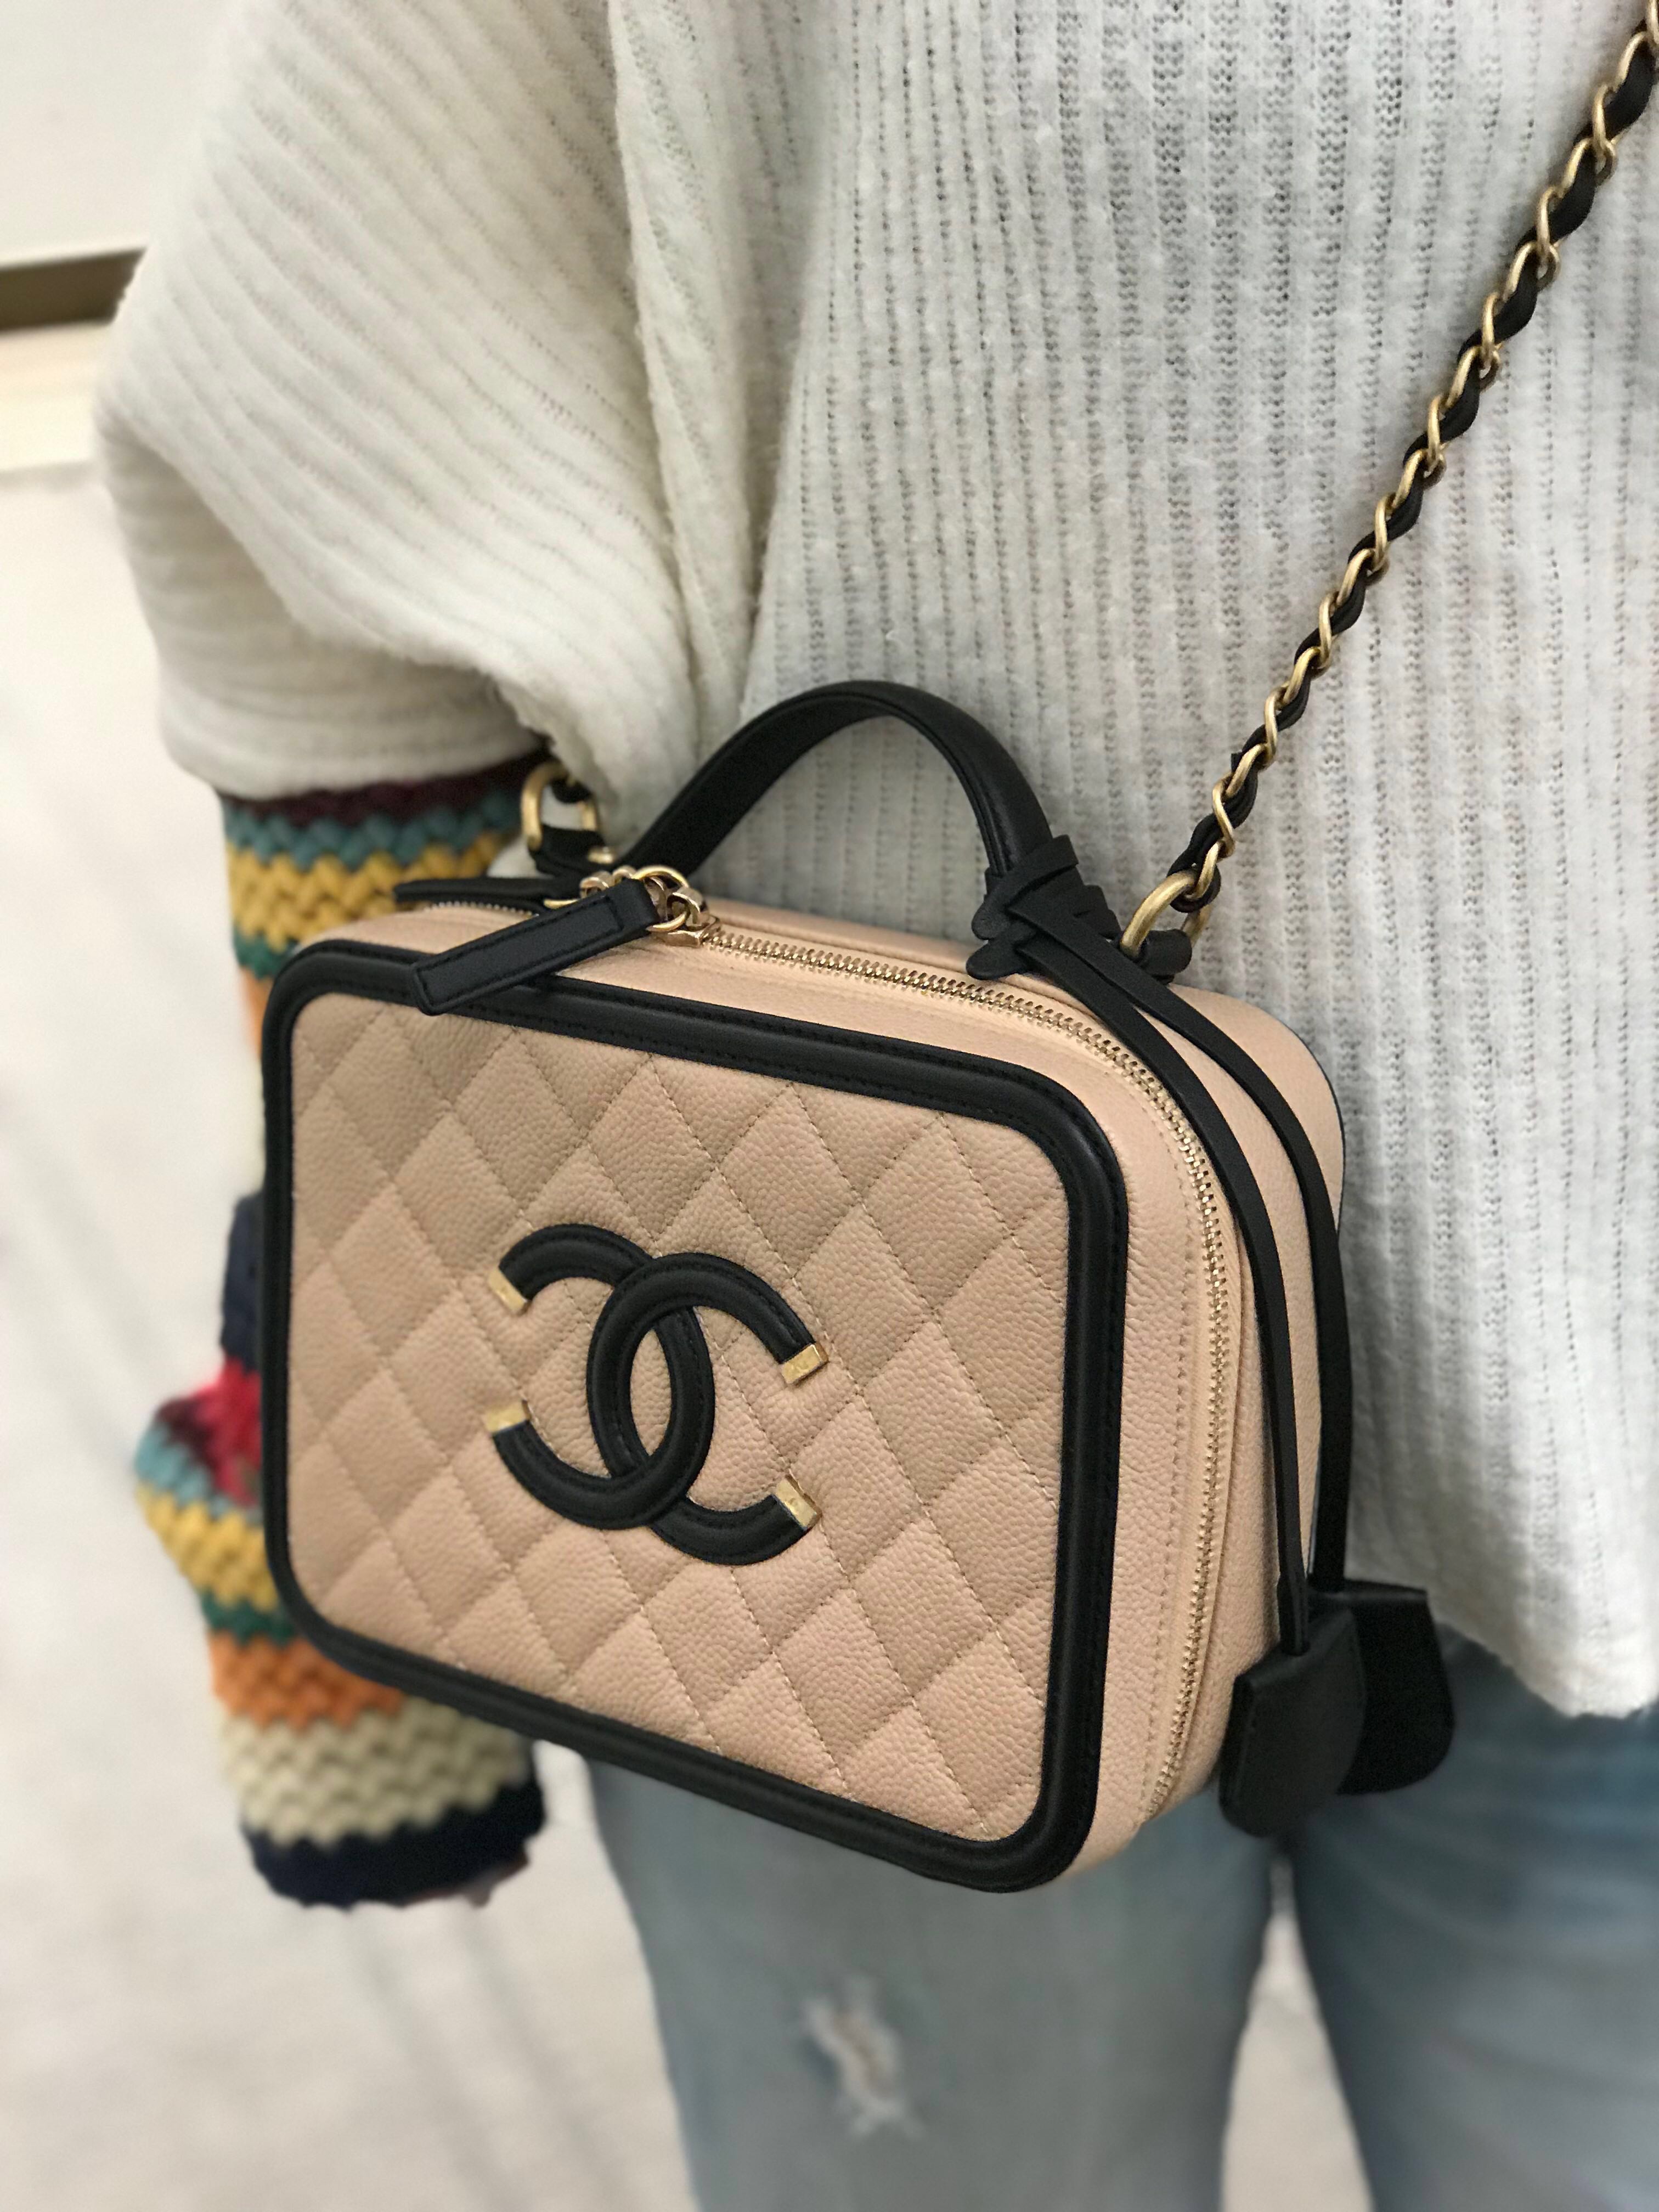 Chanel Filigree Vanity Case - Luxe Du Jour